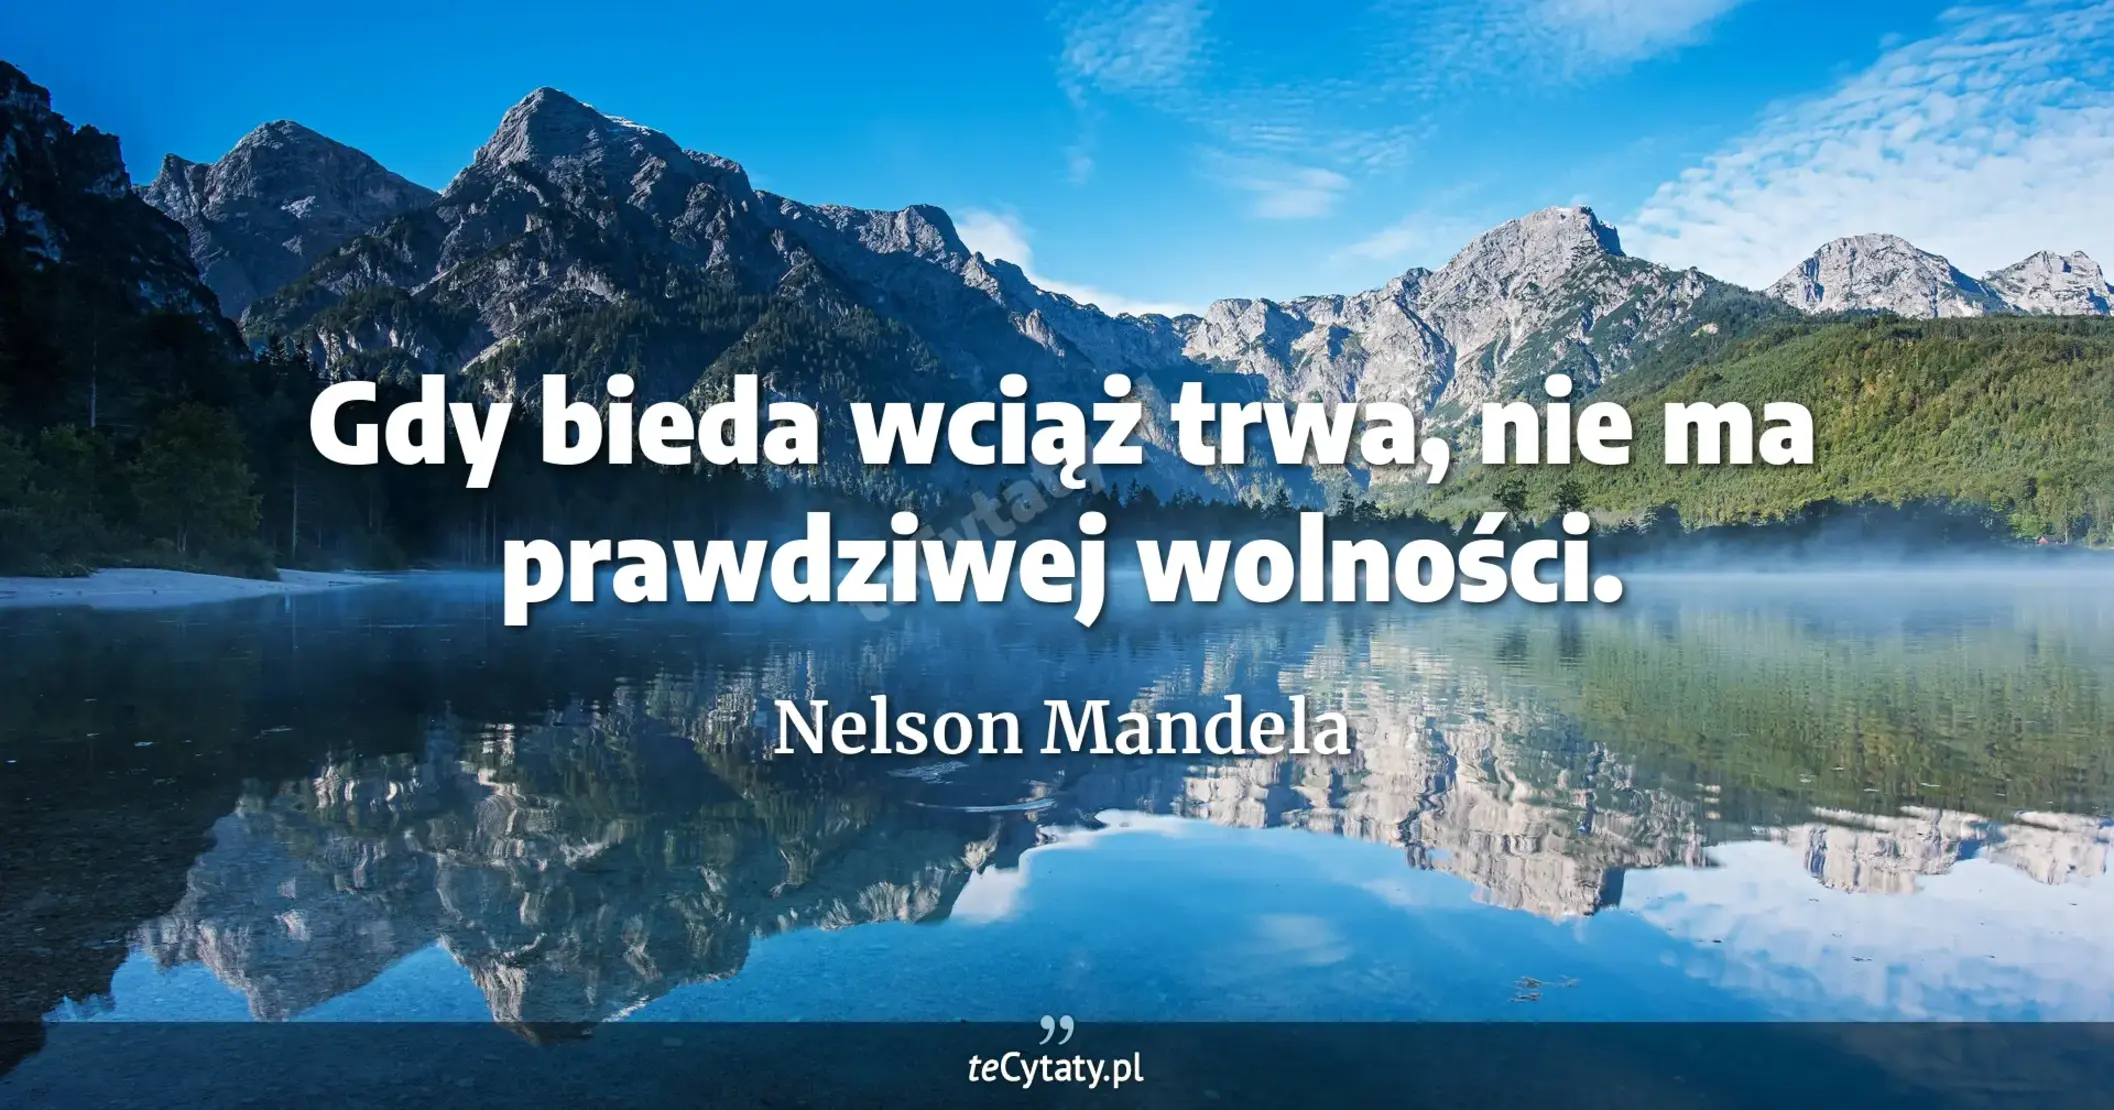 Gdy bieda wciąż trwa, nie ma prawdziwej wolności. - Nelson Mandela